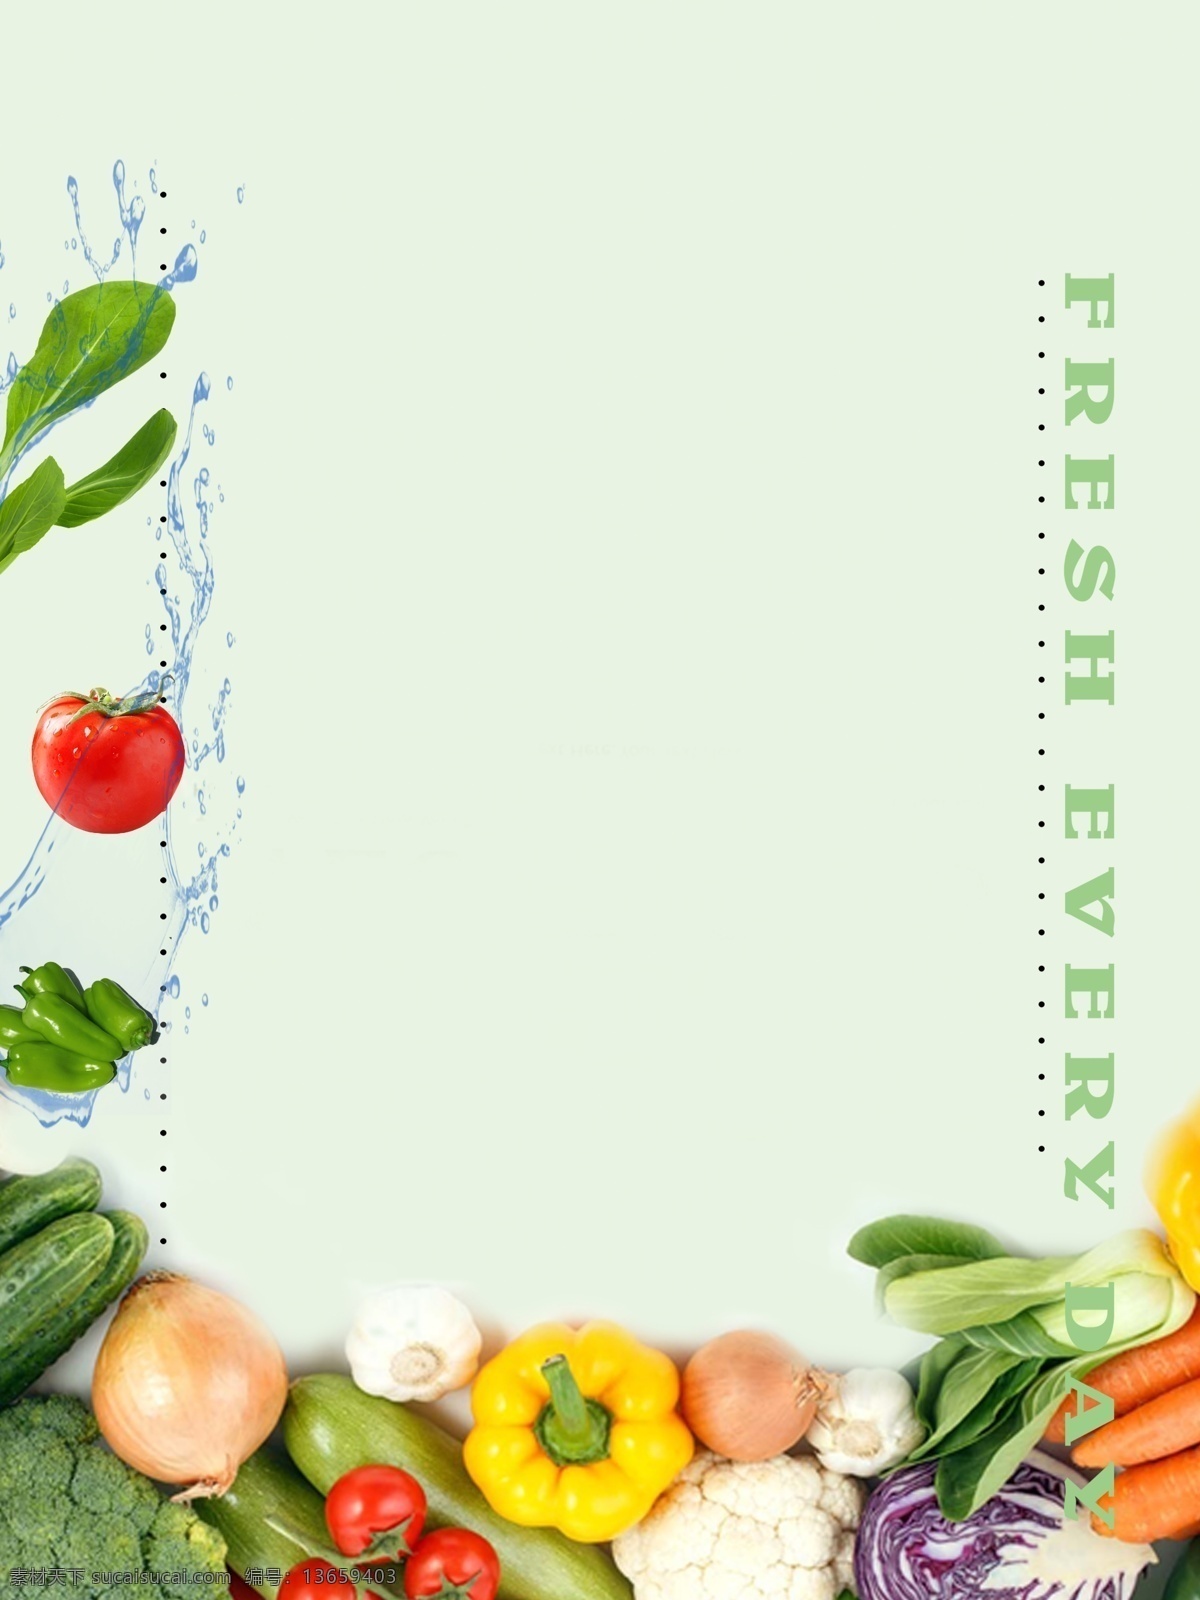 清新 果蔬 背景 果蔬背景 水果 蔬菜 饮食健康 西红柿 绿叶 青菜 新鲜果蔬 生态果蔬 胡萝卜